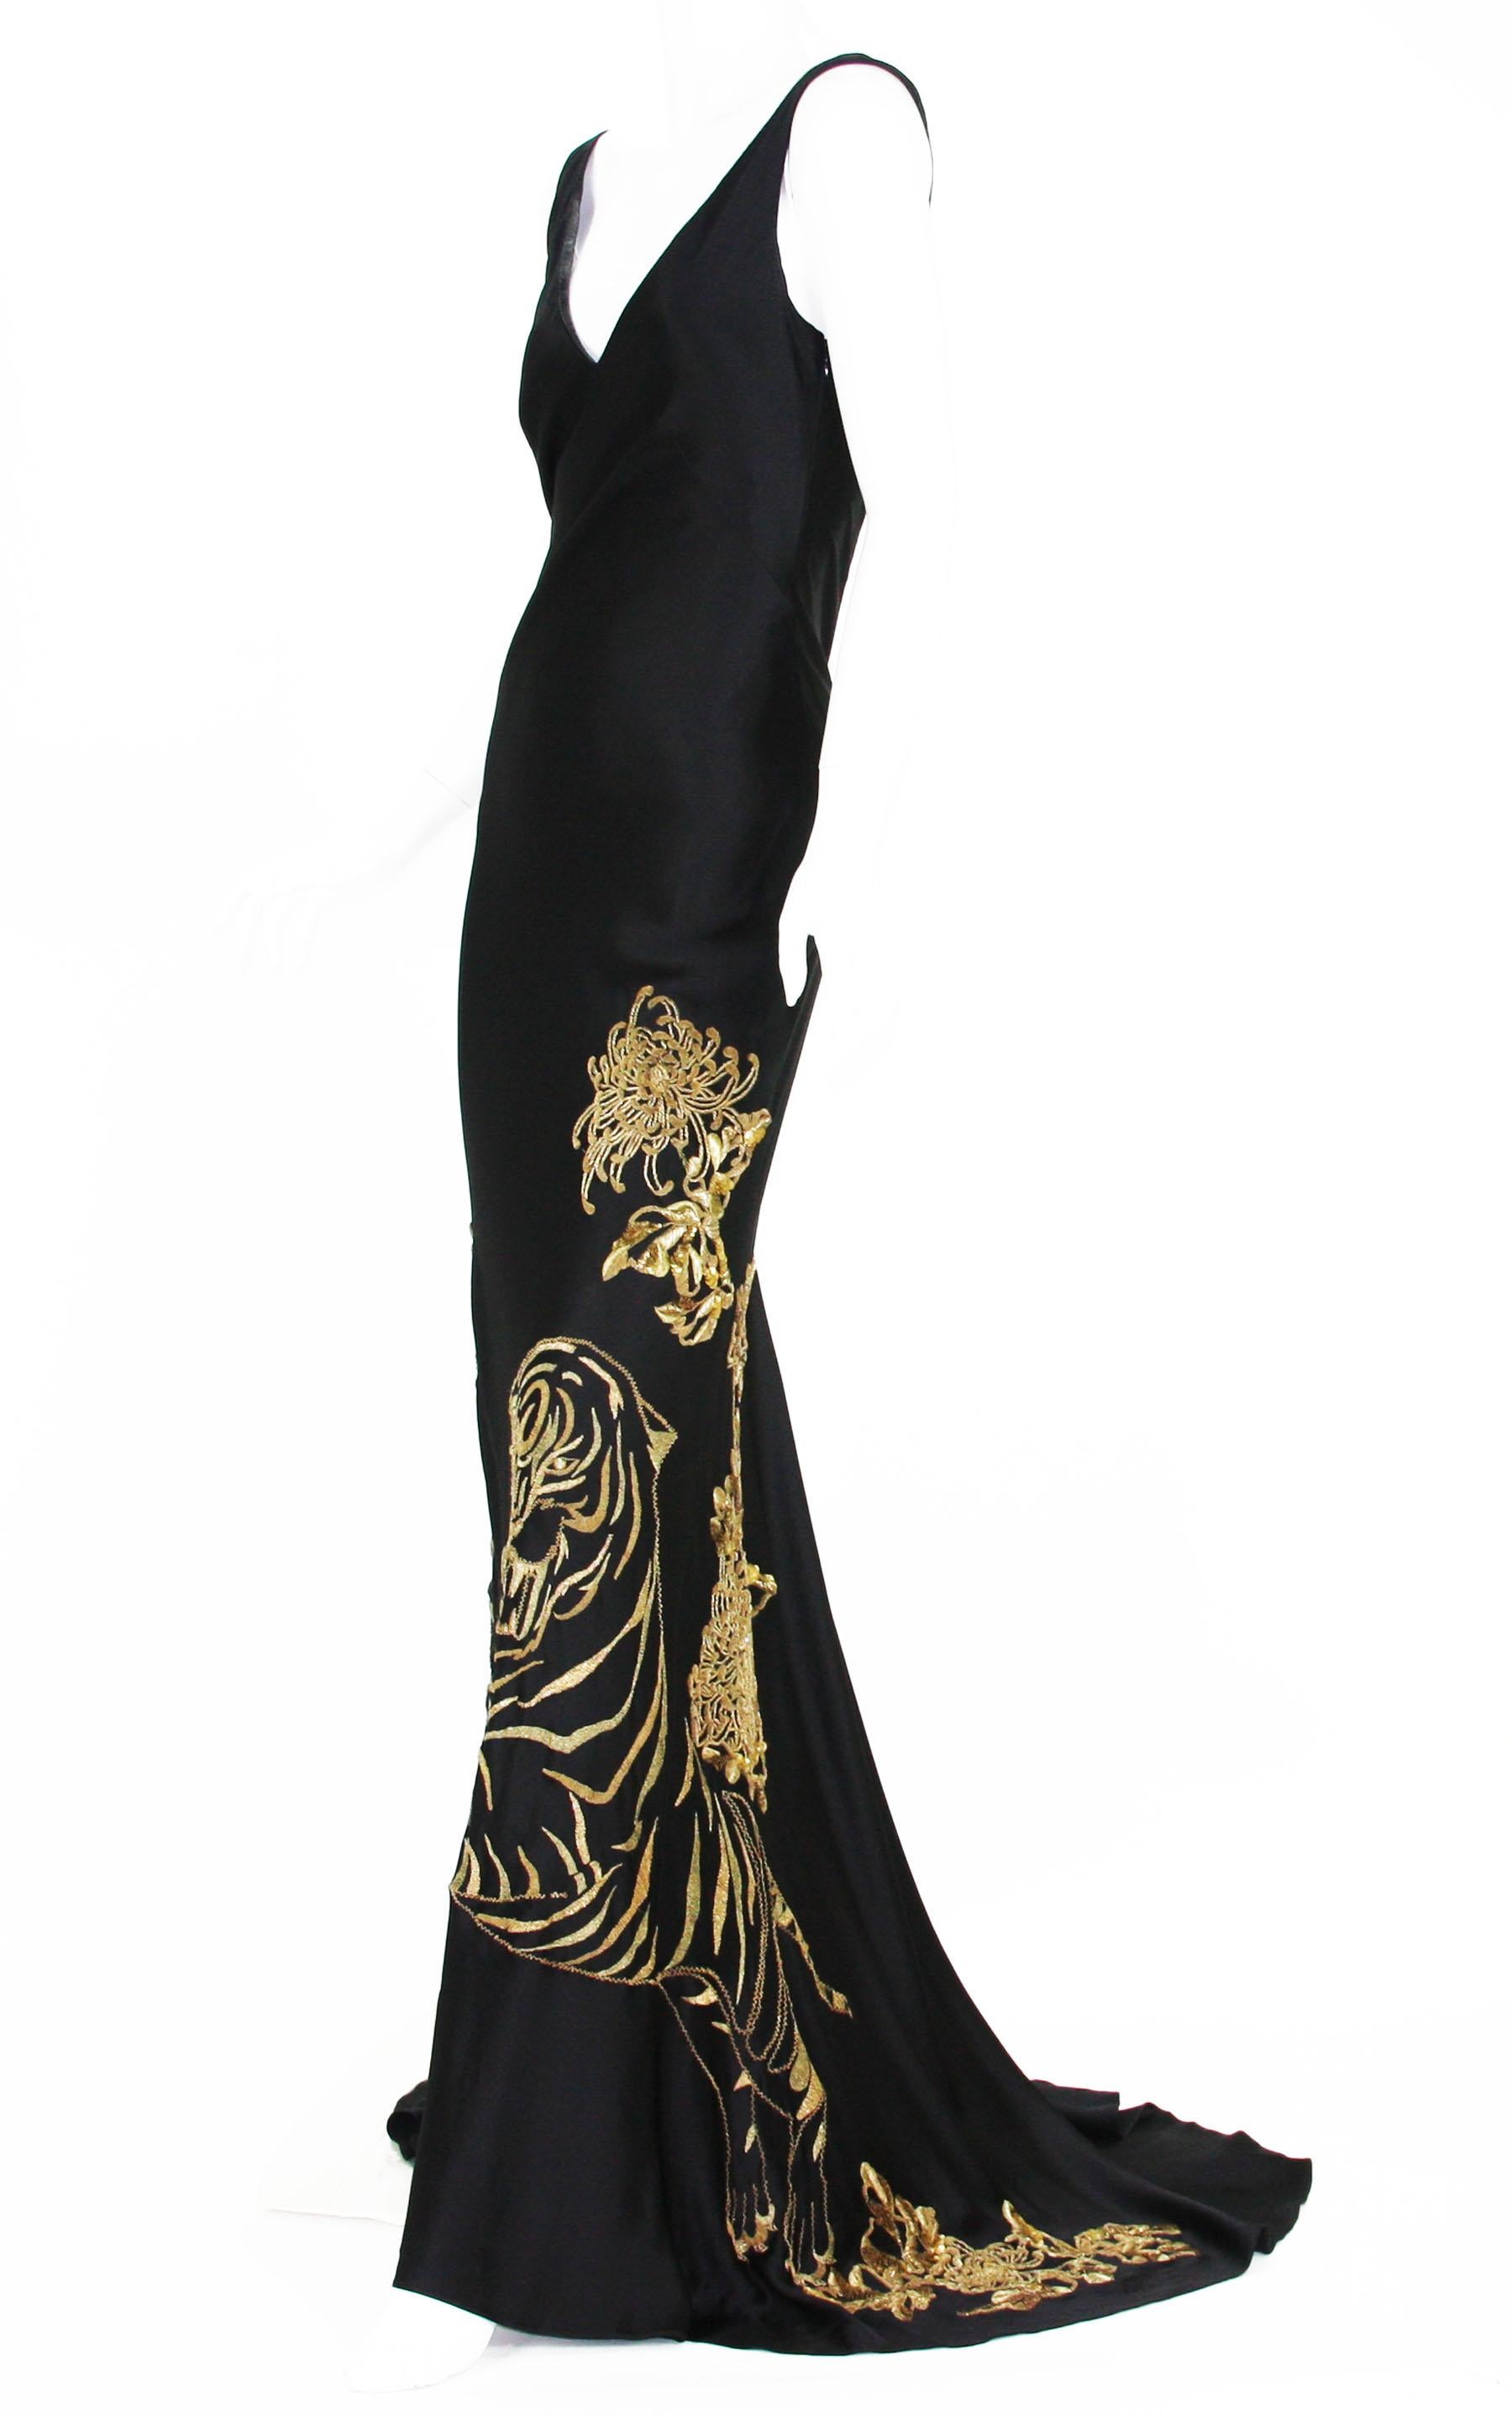 Alexander McQueen Robe noire en soie avec broderies dorées à la main
Collection 2007
Taille du créateur - 42
100 % soie, broderie à la main en or avec paillettes et strass sur les yeux de tigre, style traîne, entièrement doublé de soie.
Mesures :